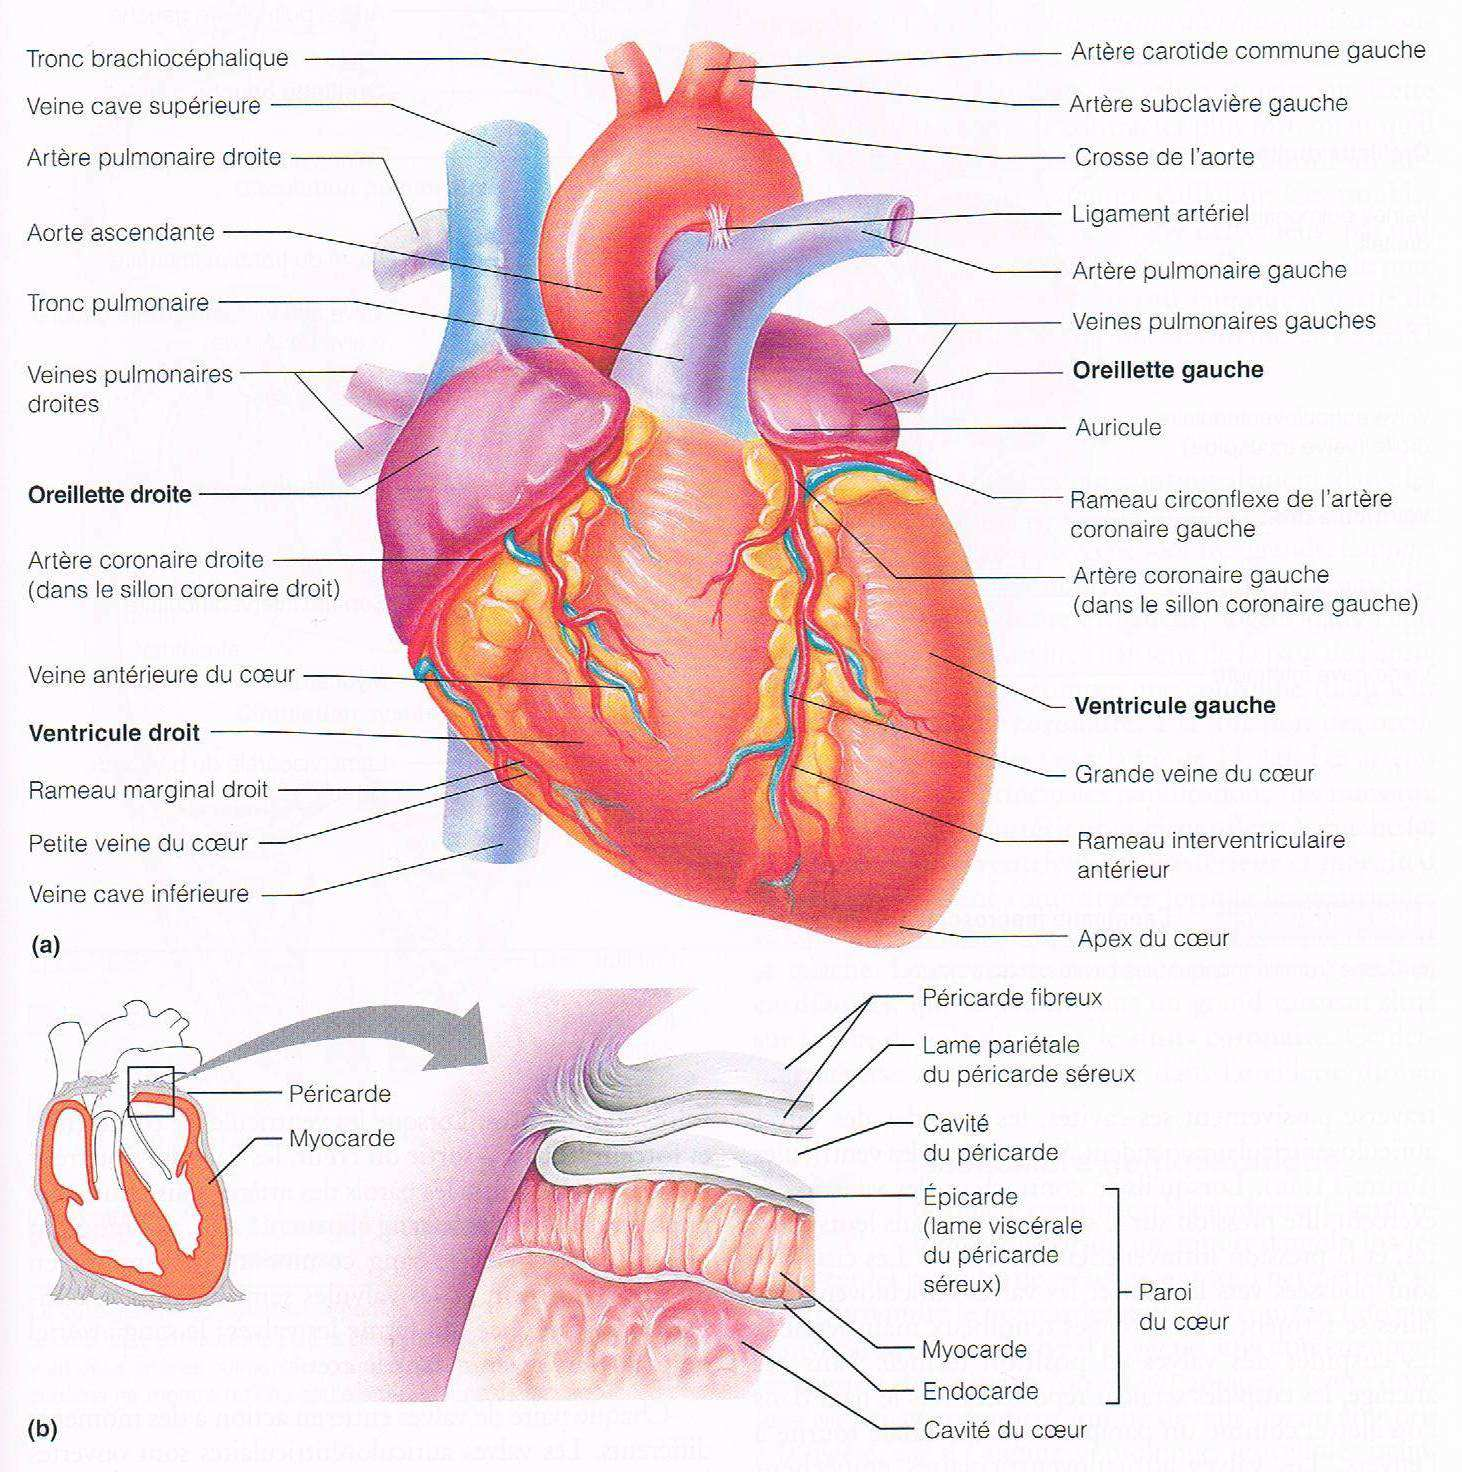 endothélium mince qui tapisse les cavités du cœur. Il est en continuité avec l endothélium des vaisseaux sanguins qui aboutissent au cœur ou qui en émergent.